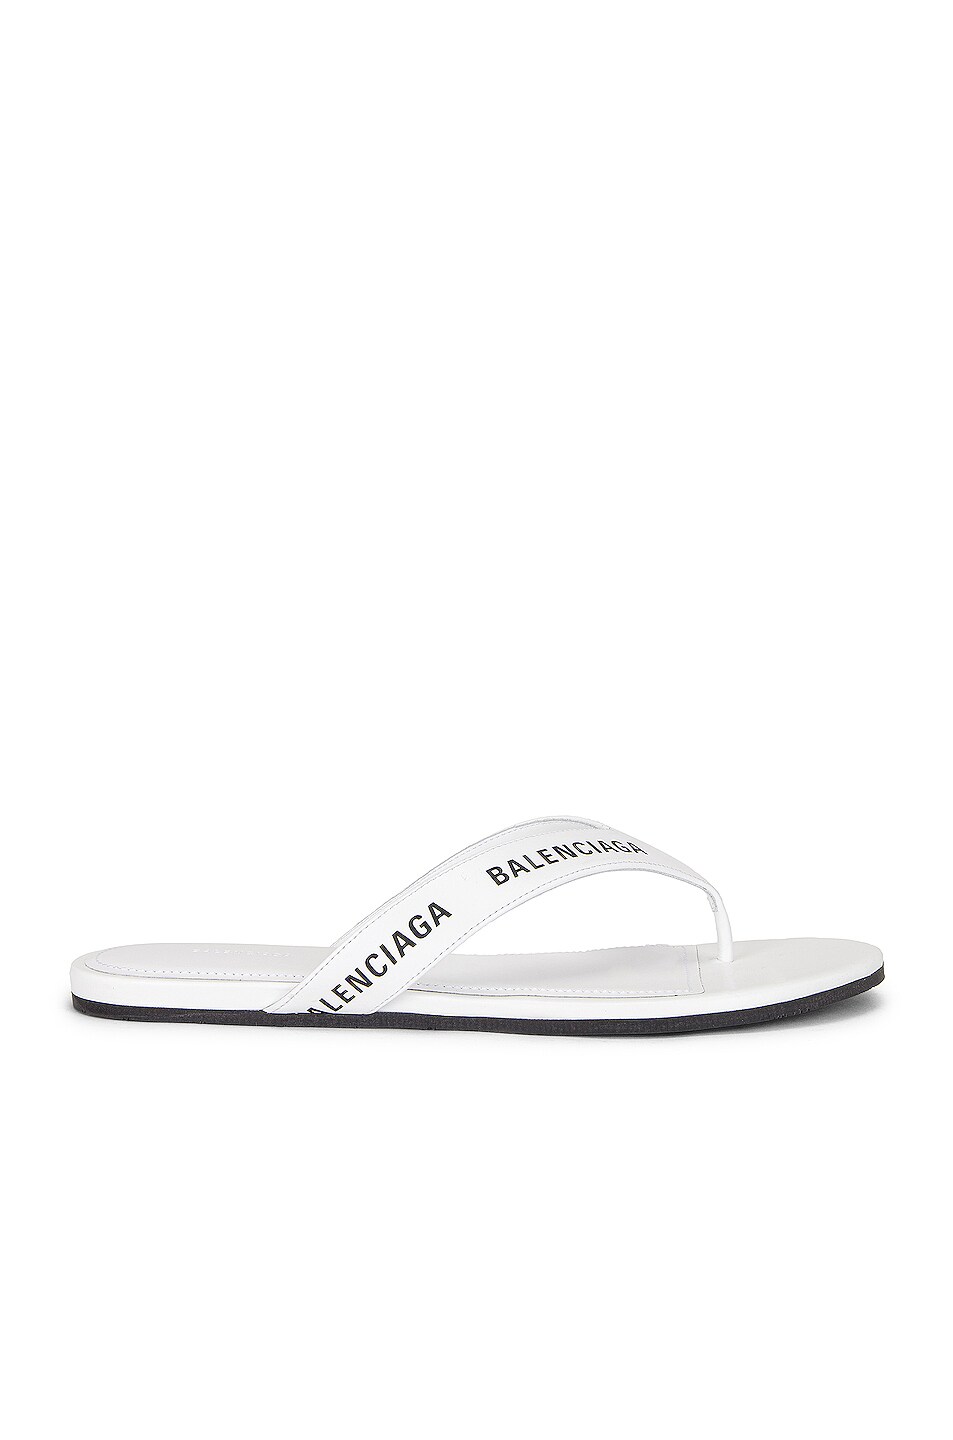 Image 1 of Balenciaga Round Flip Flop Sandals in White & Black